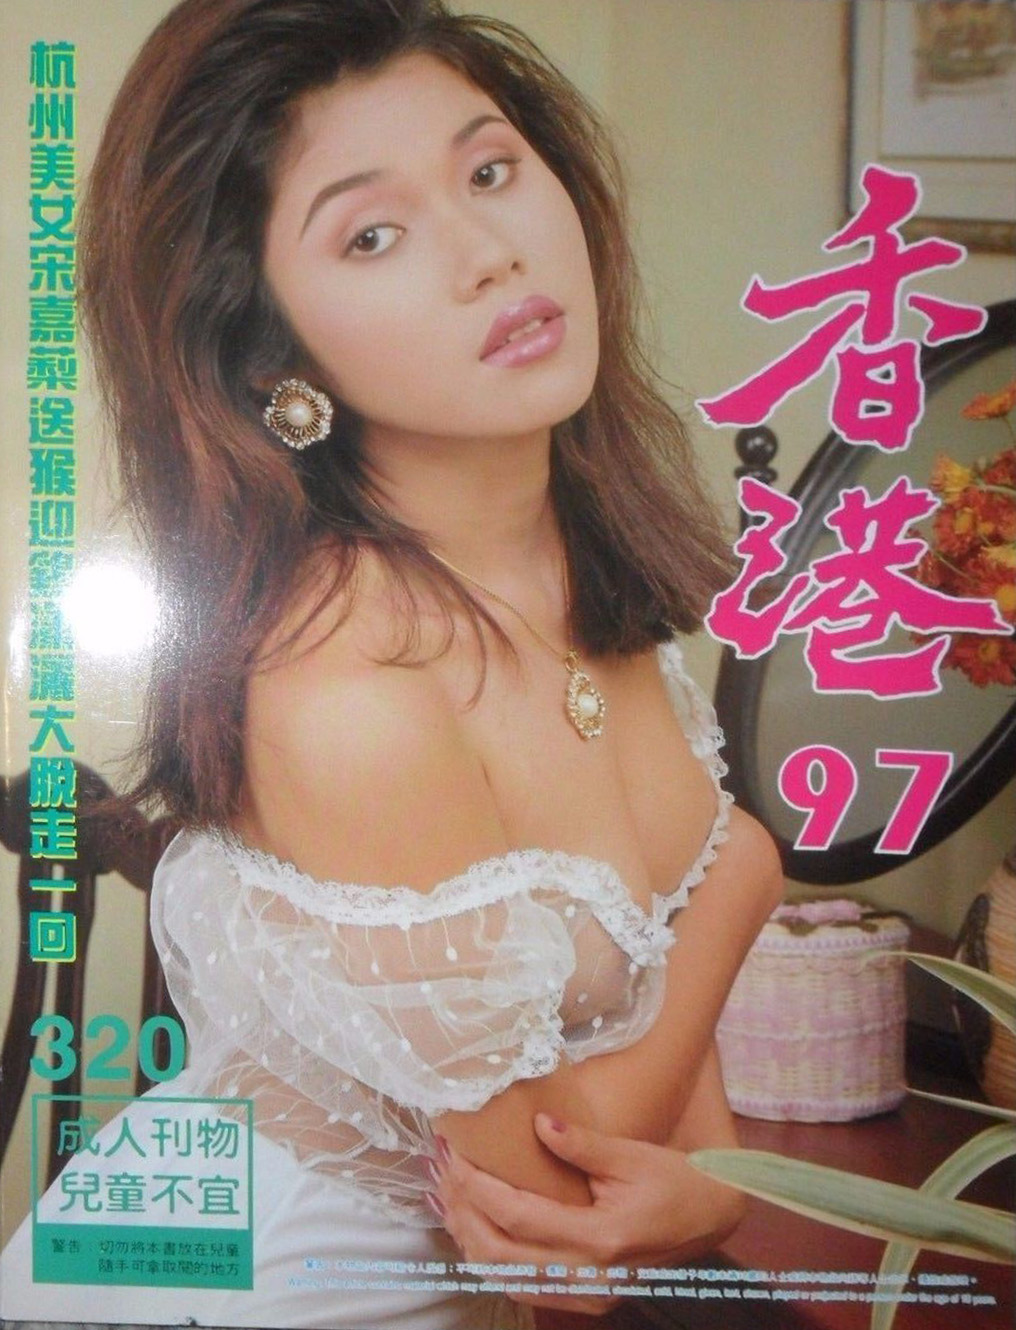 Hong Kong 97 # 320 magazine back issue Hong Kong 97 Chinese magizine back copy 